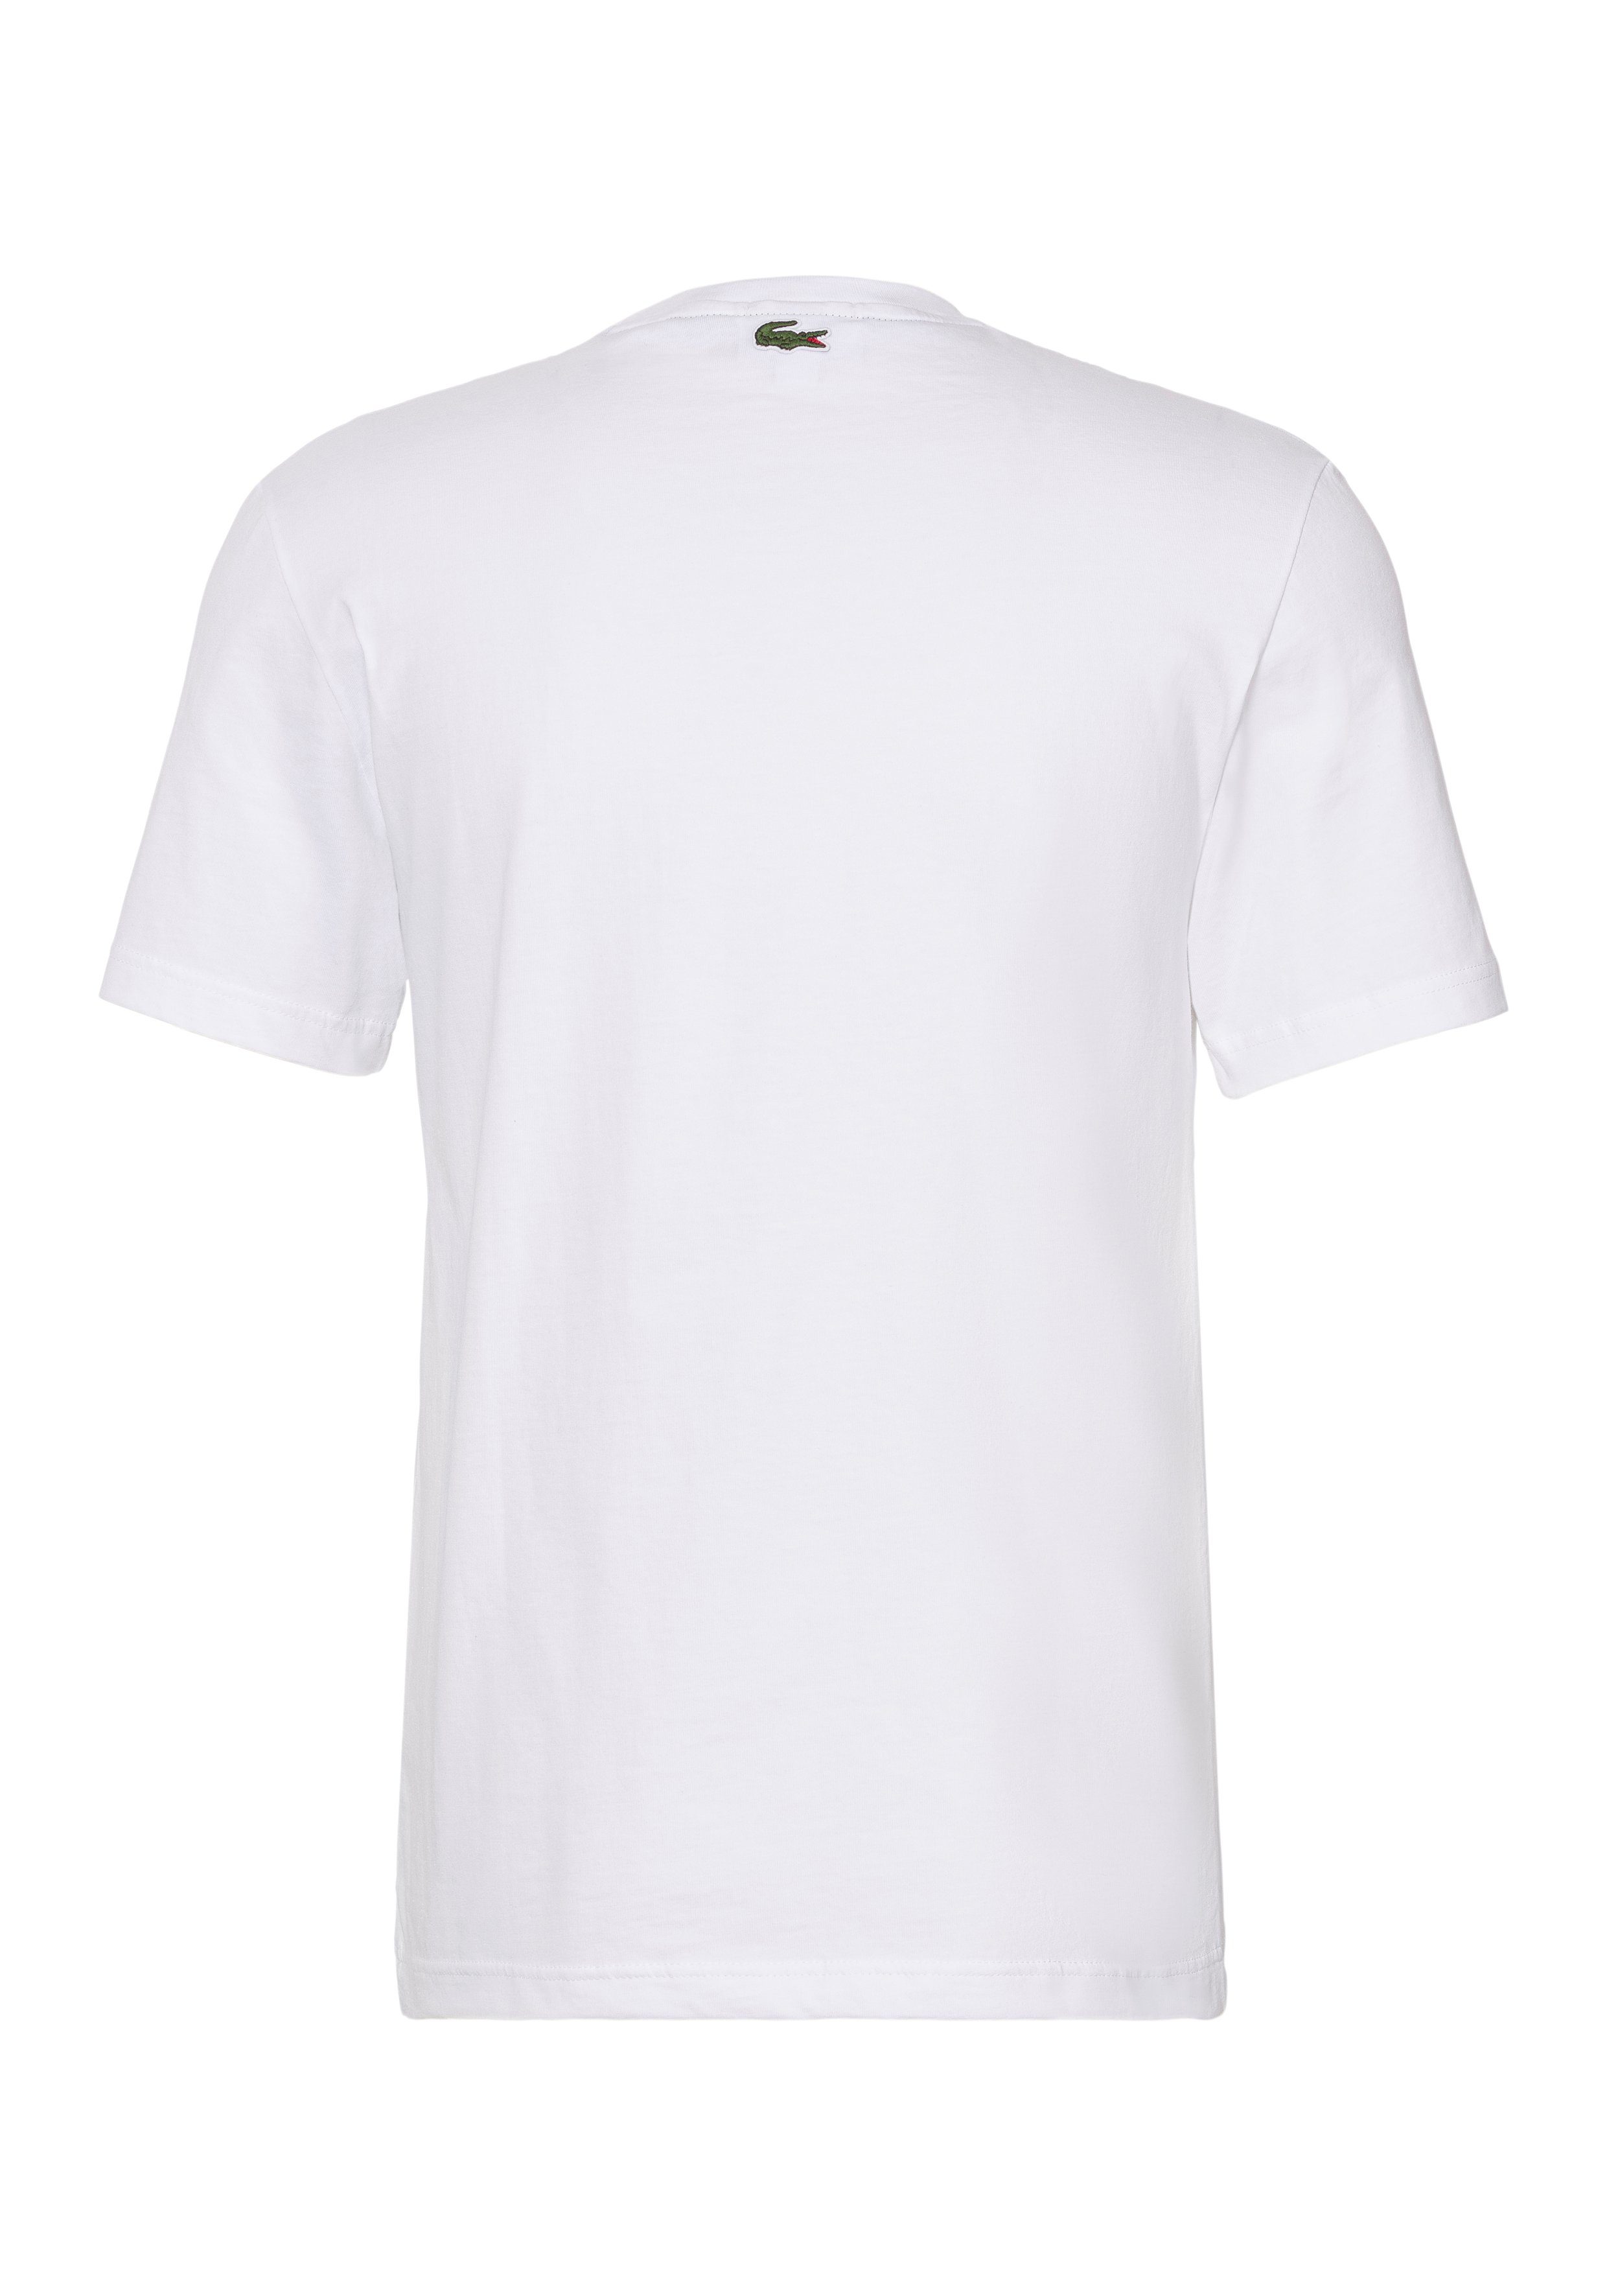 mit auf Print T-Shirt Brust Lacoste WHITE Lacoste T-SHIRT der